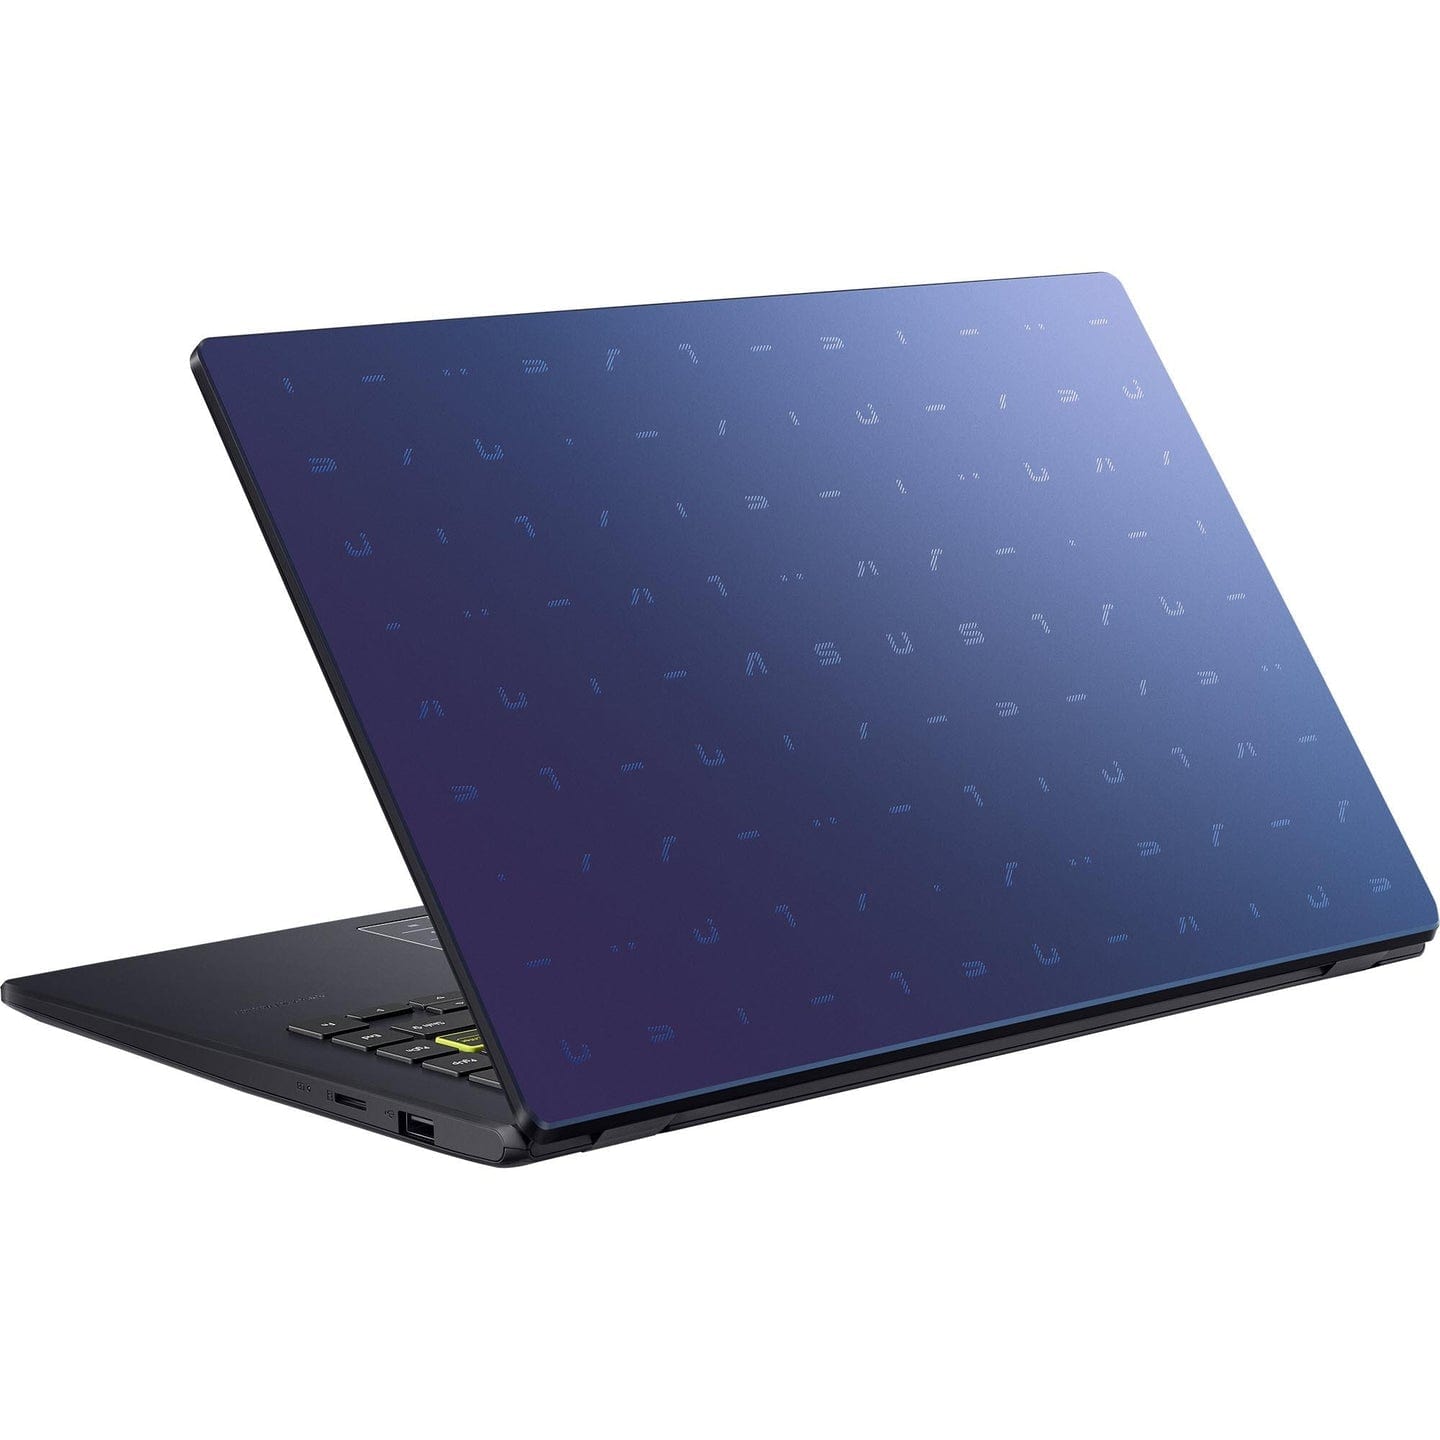 Asus 14 Hd Laptop (128Gb) Intel Celeron